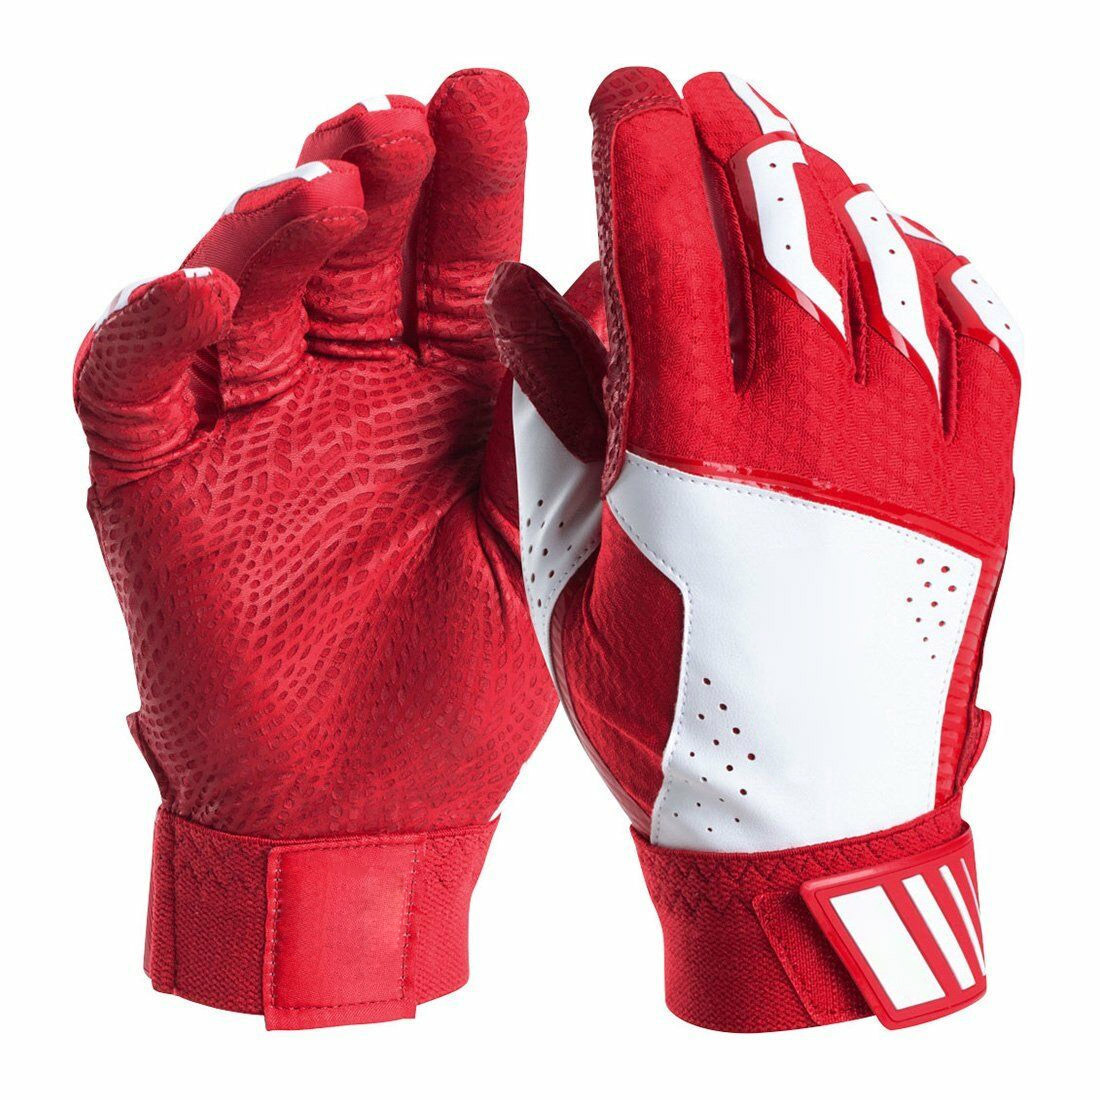 wholesale red baseball batting gloves custom logo batting gloves